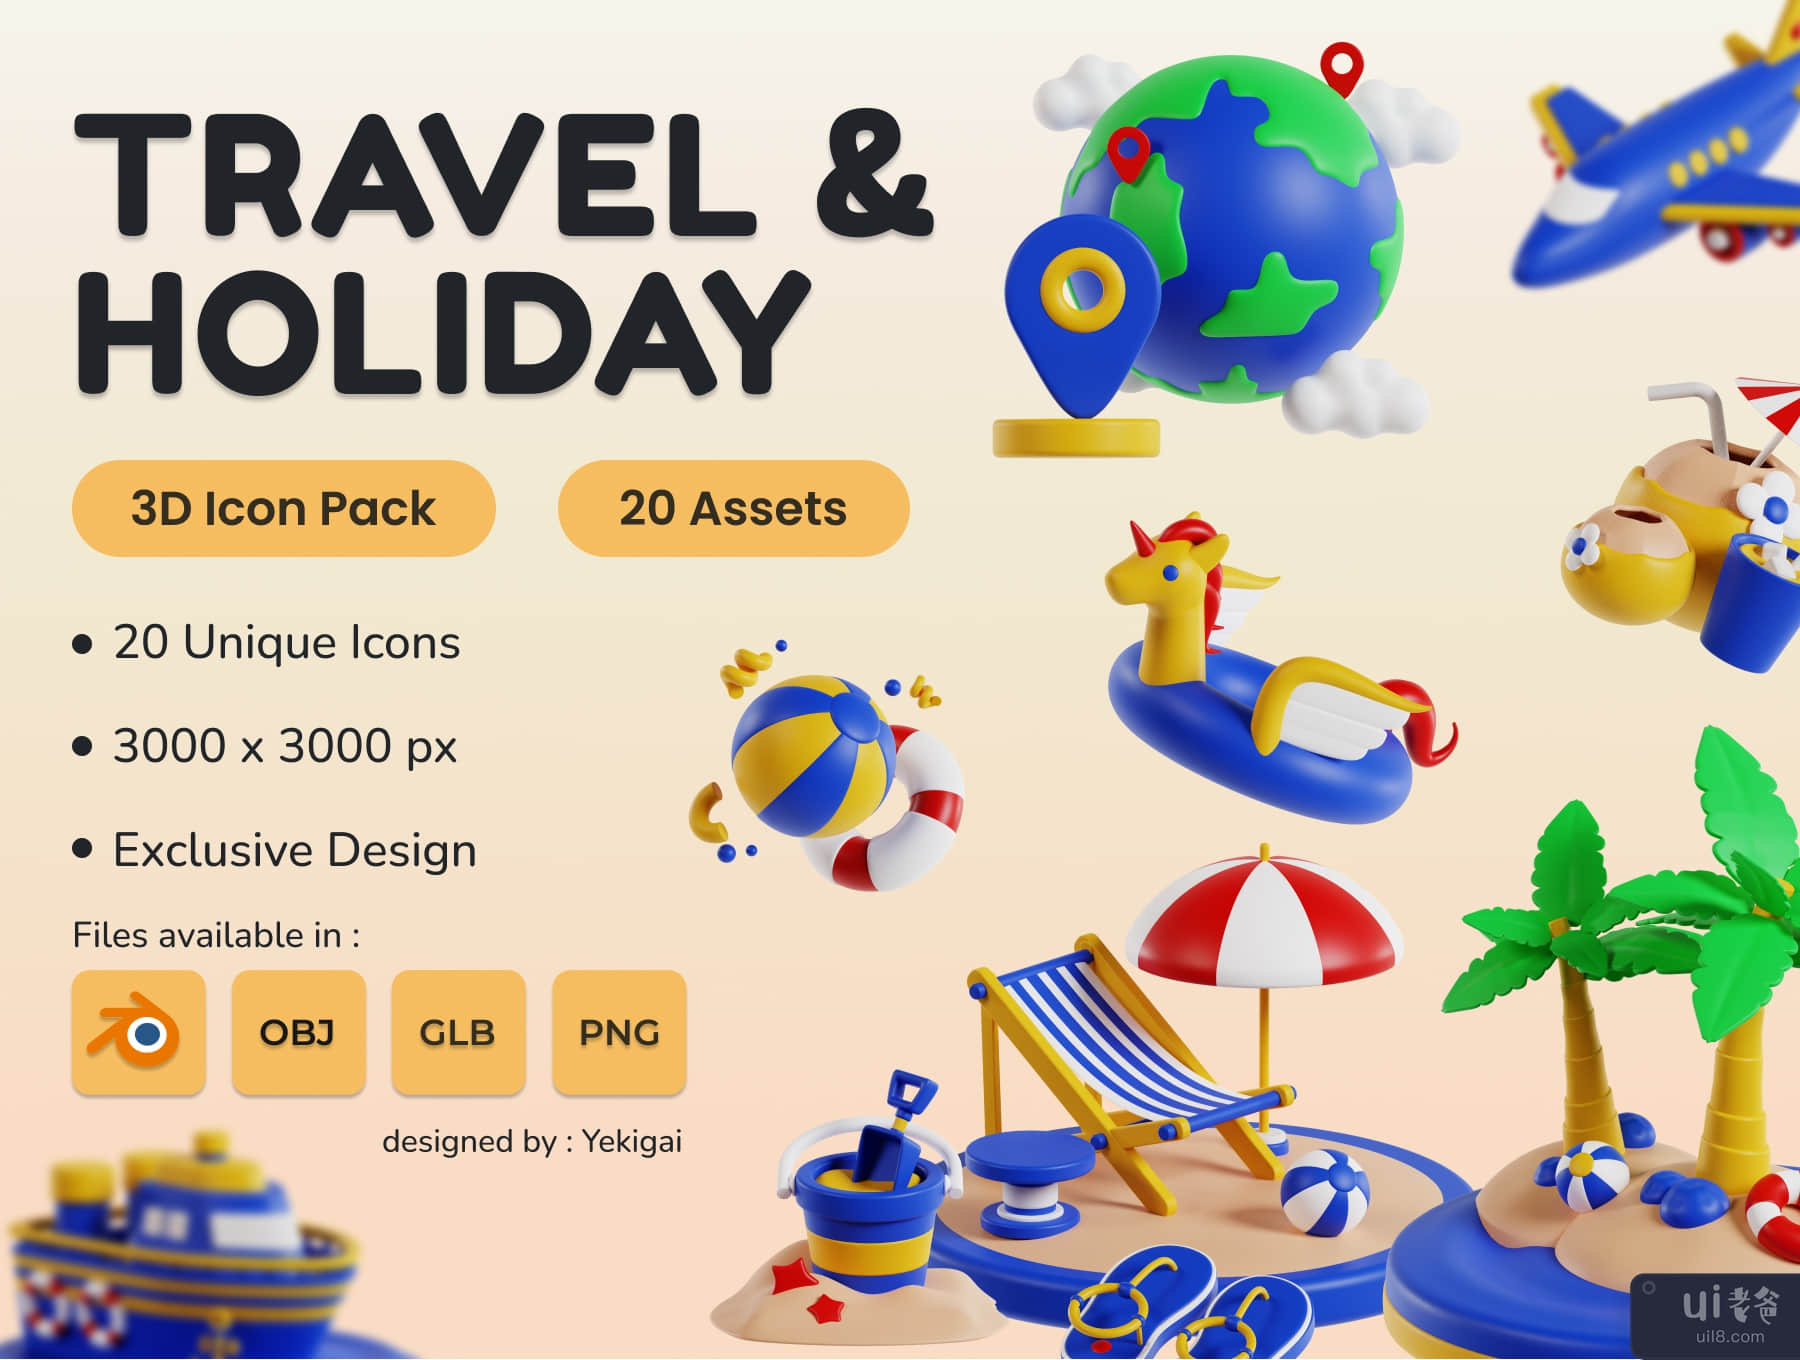 旅行和假日 3D 图标包 (Travel and Holiday 3D Icon Pack)插图5